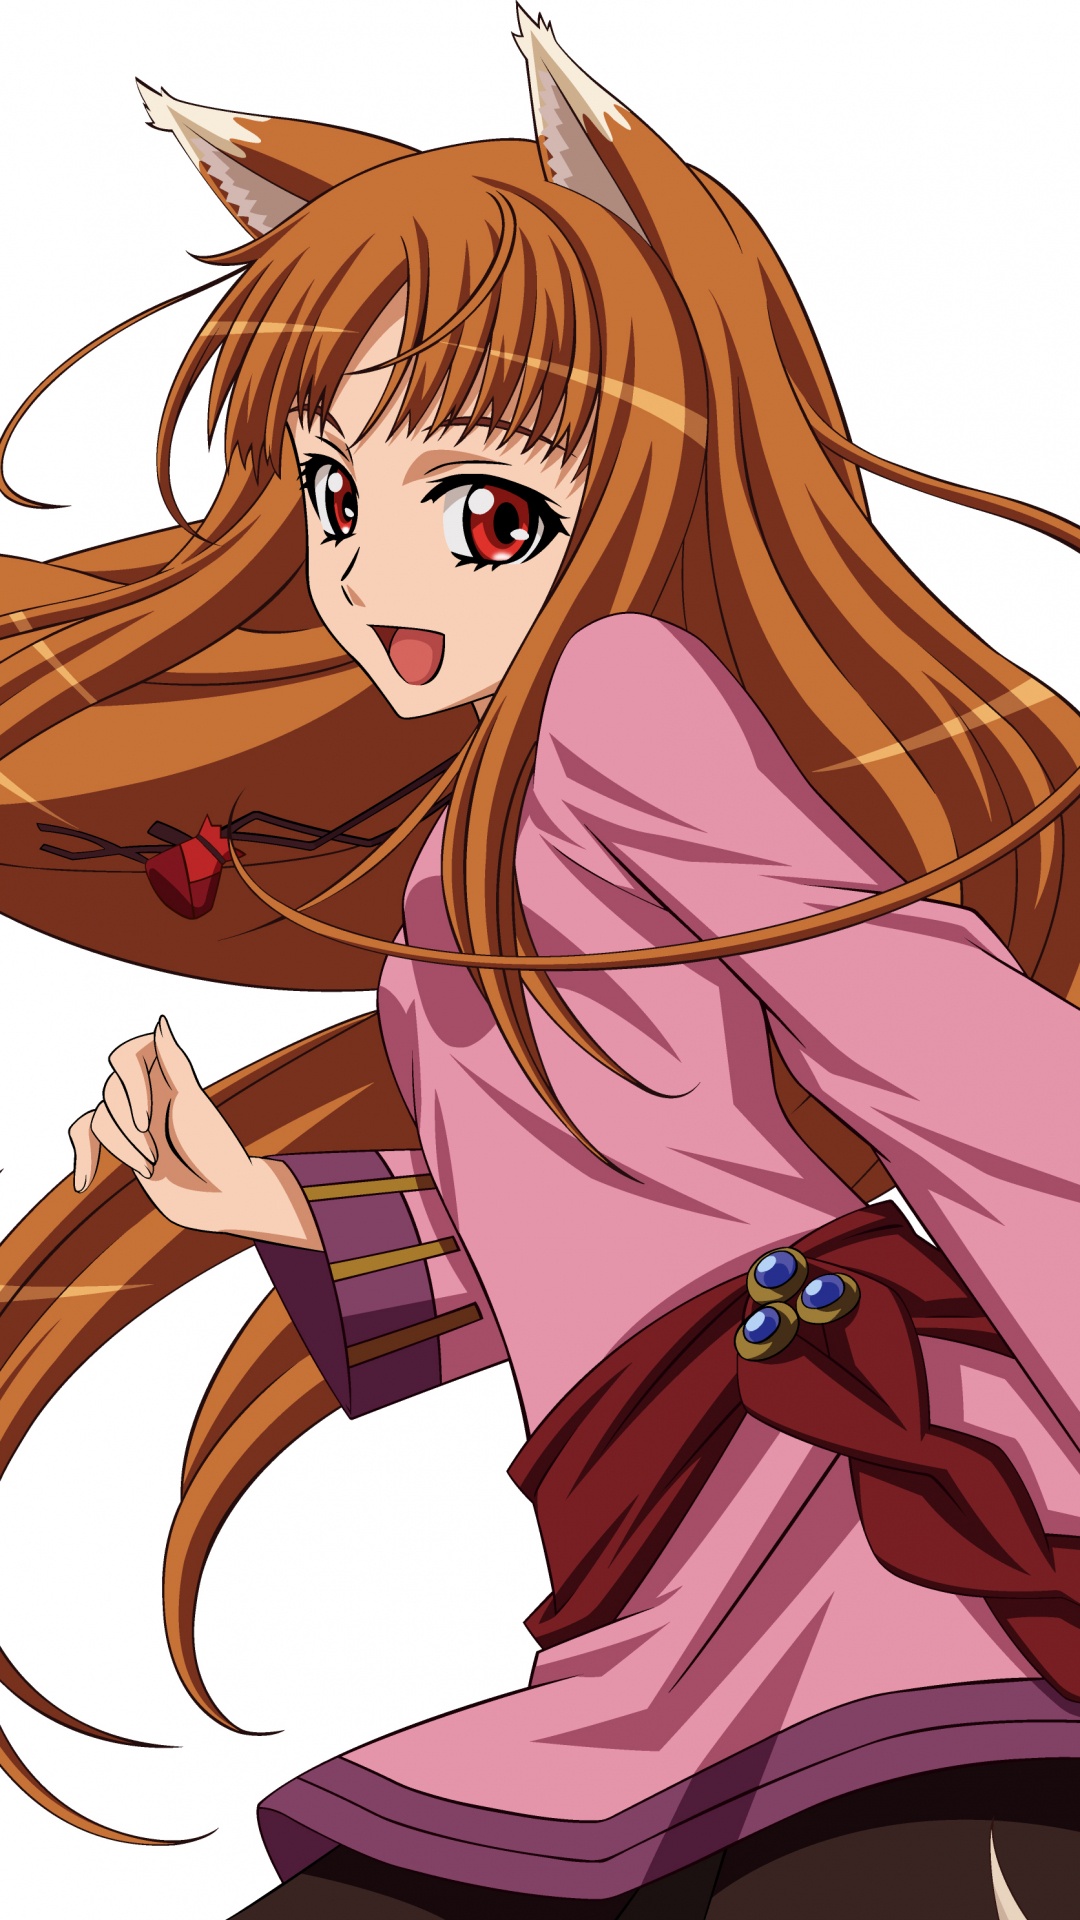 Chica de Pelo Rubio en Vestido Rosa Personaje de Anime. Wallpaper in 1080x1920 Resolution